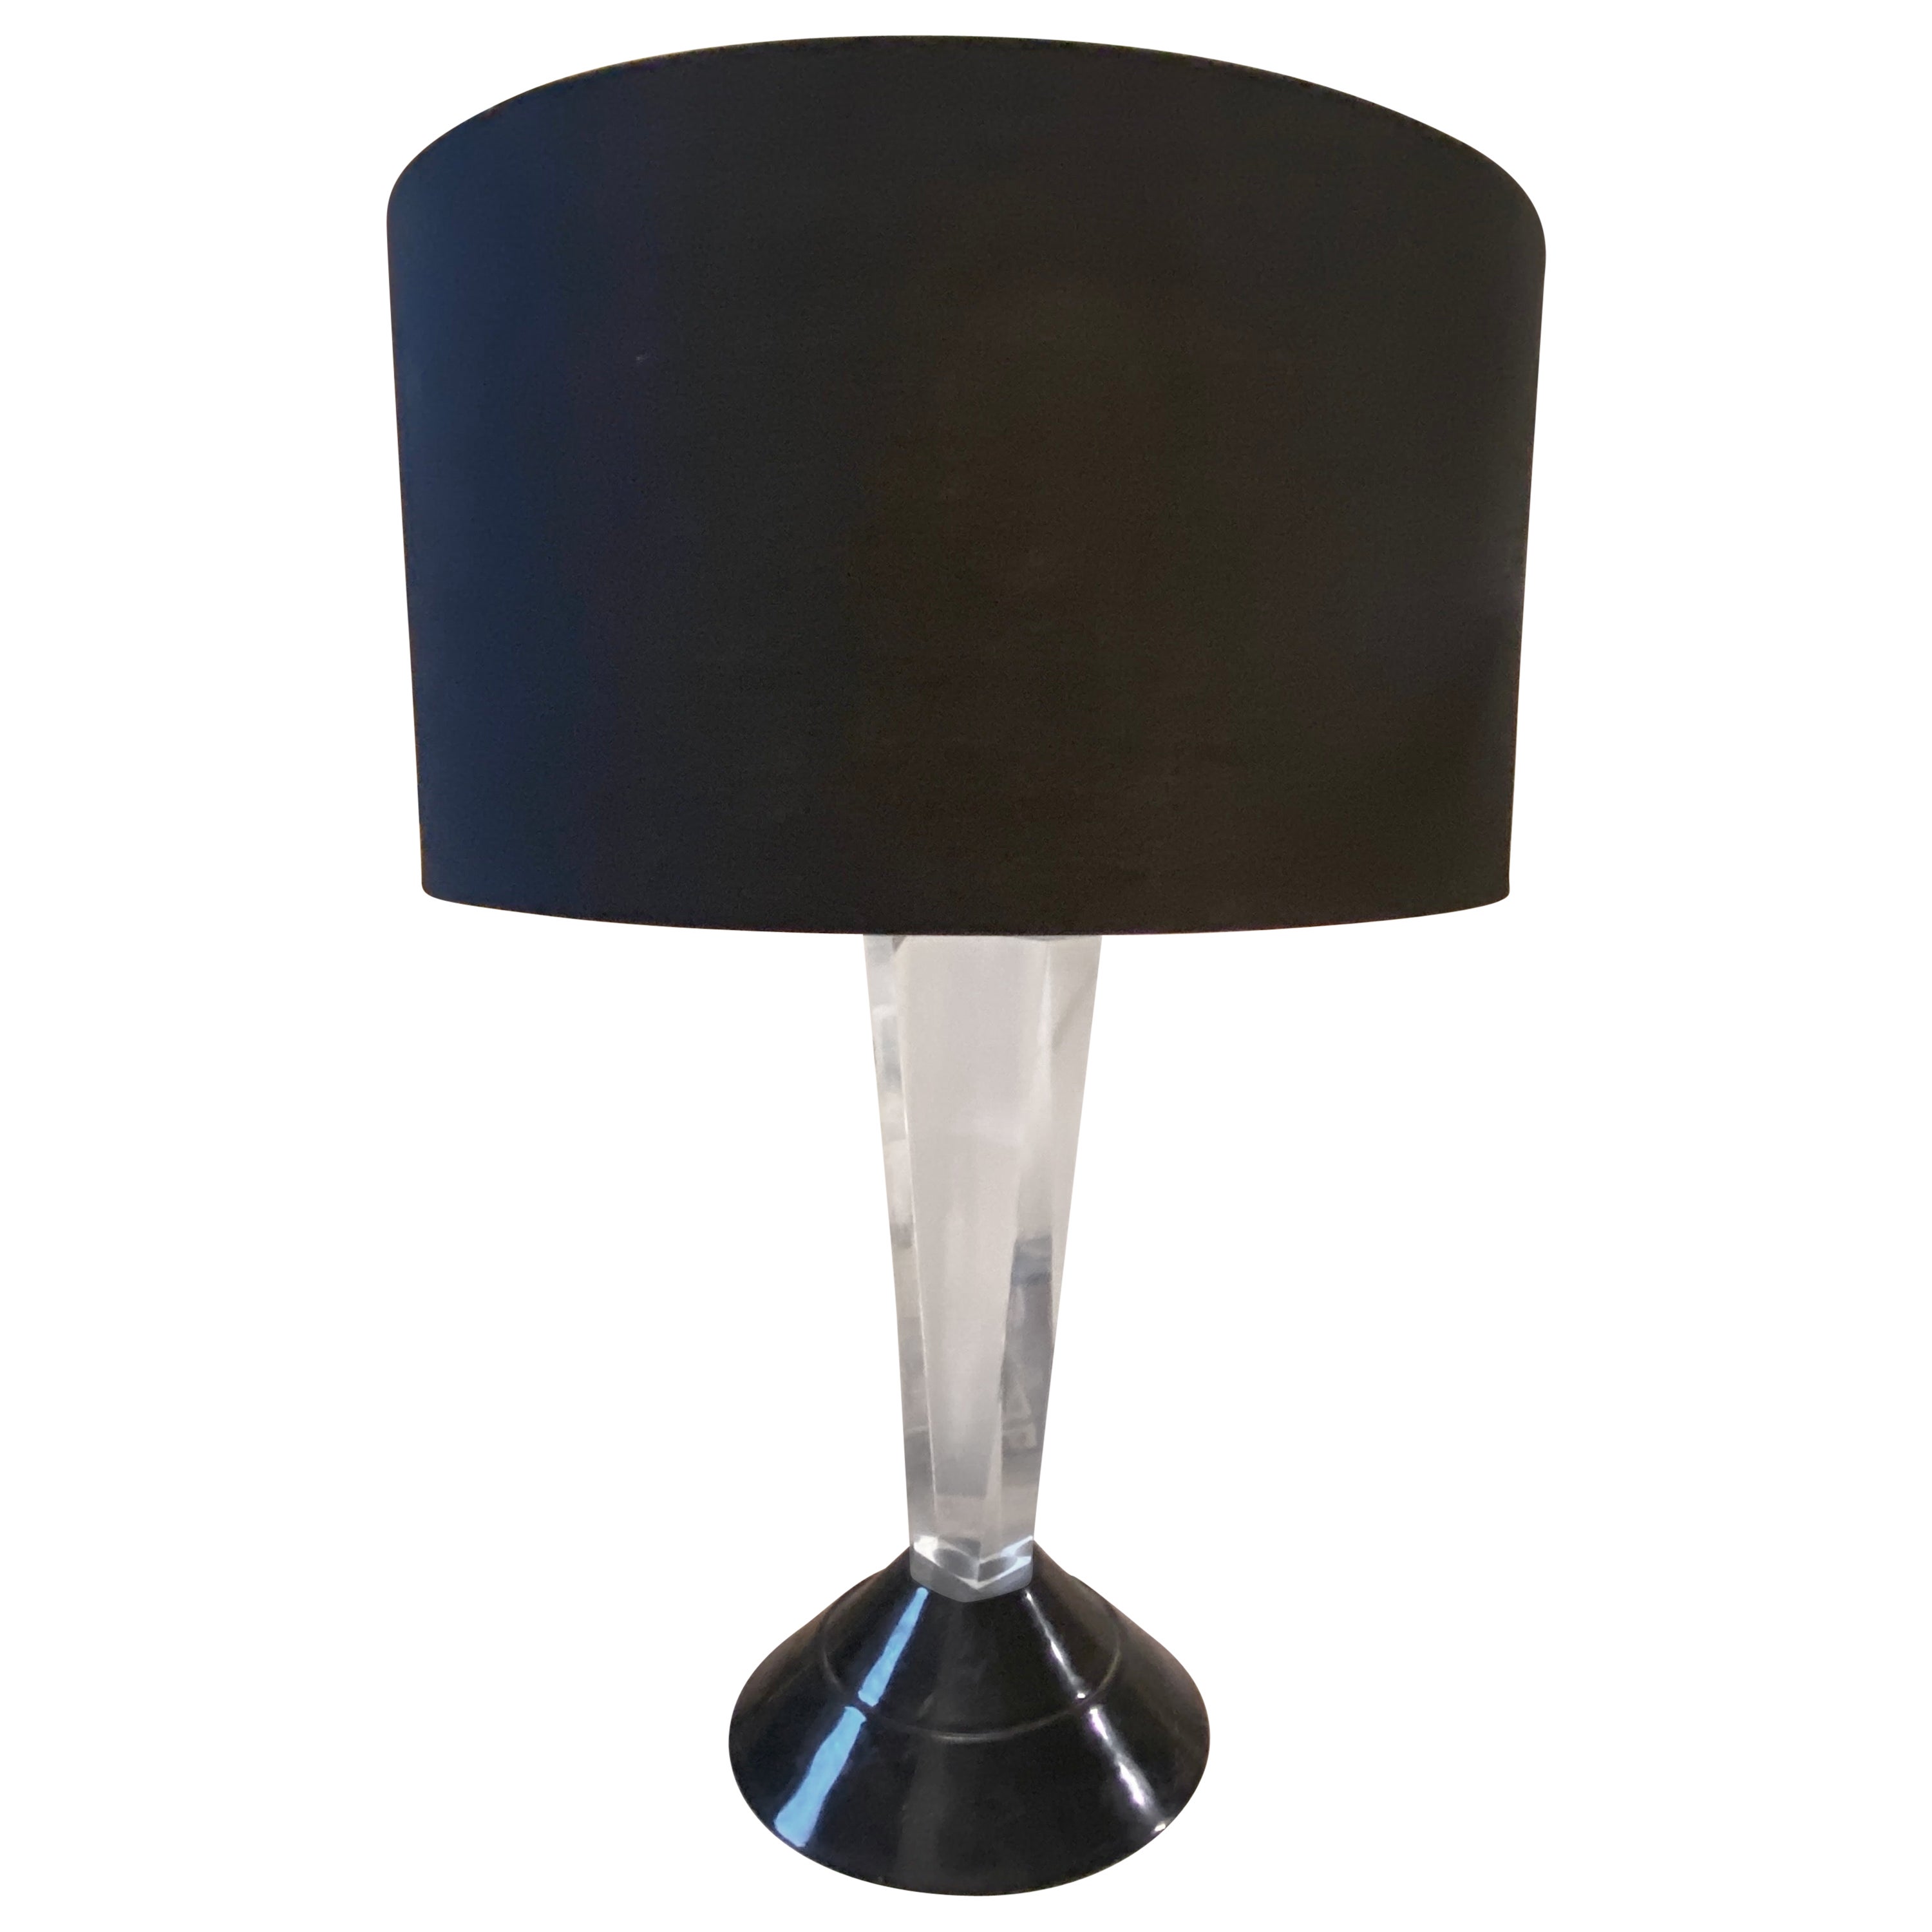 Lampe de table italienne de style Memphis Milano des années 1980, en lucite noire et transparente